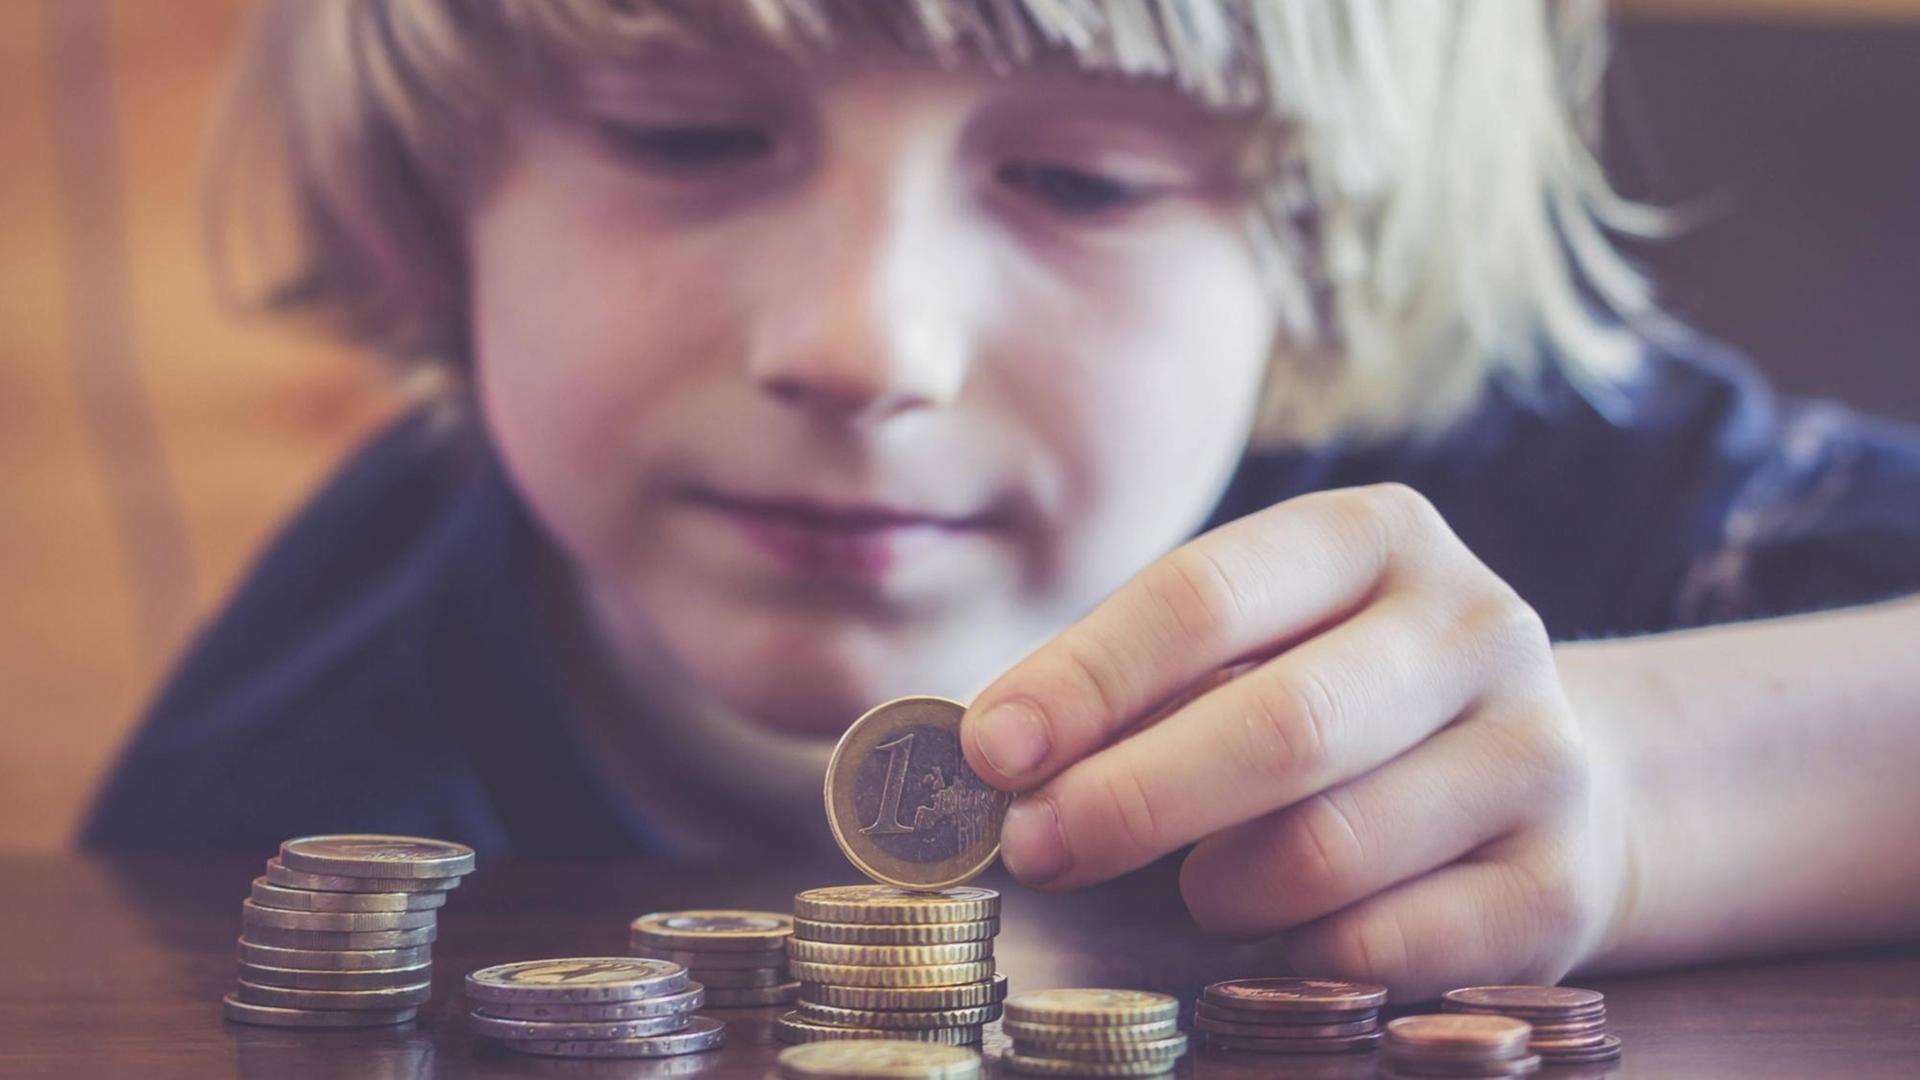 Ein Kind zählt Euromünzen.